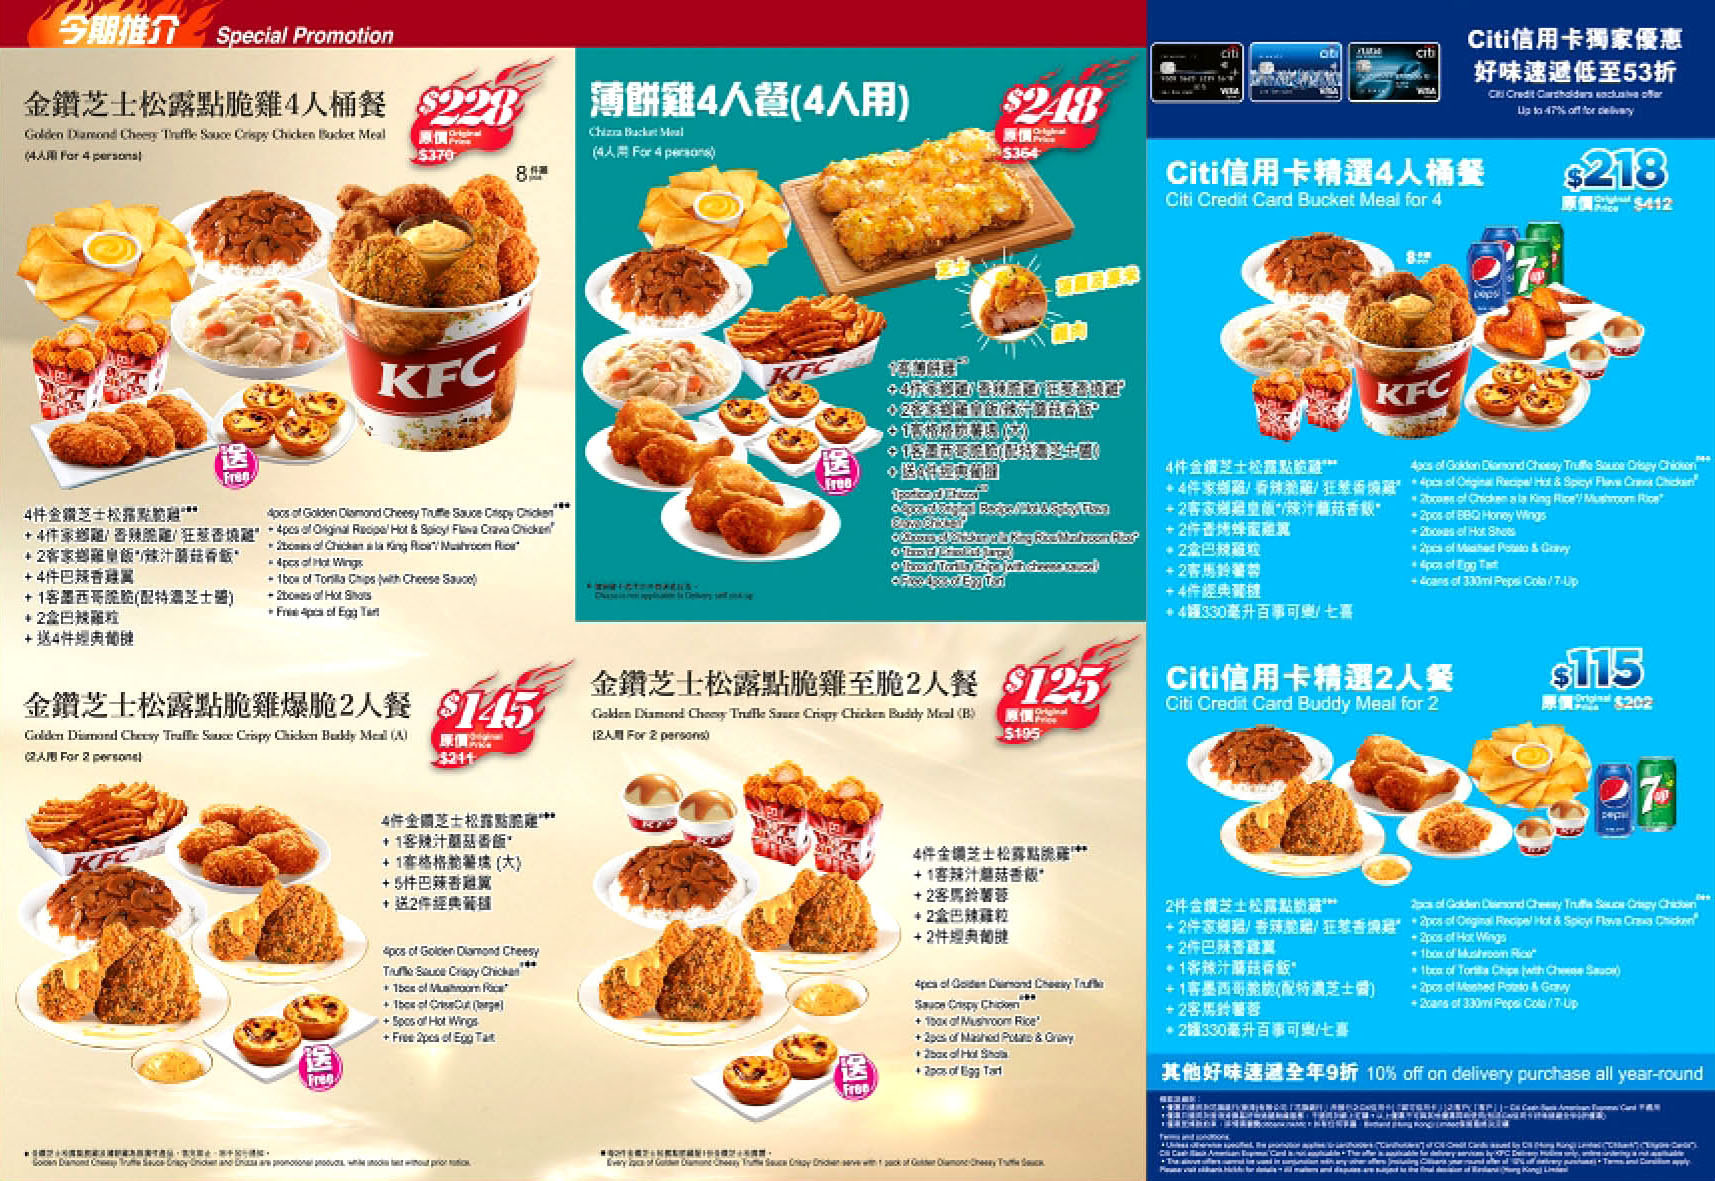 香港KFC肯德基家鄉雞餐廳KFC hk menu delivery service外賣速遞服務餐飲套餐美食餐劵餐單價錢優惠價格餐牌價目表